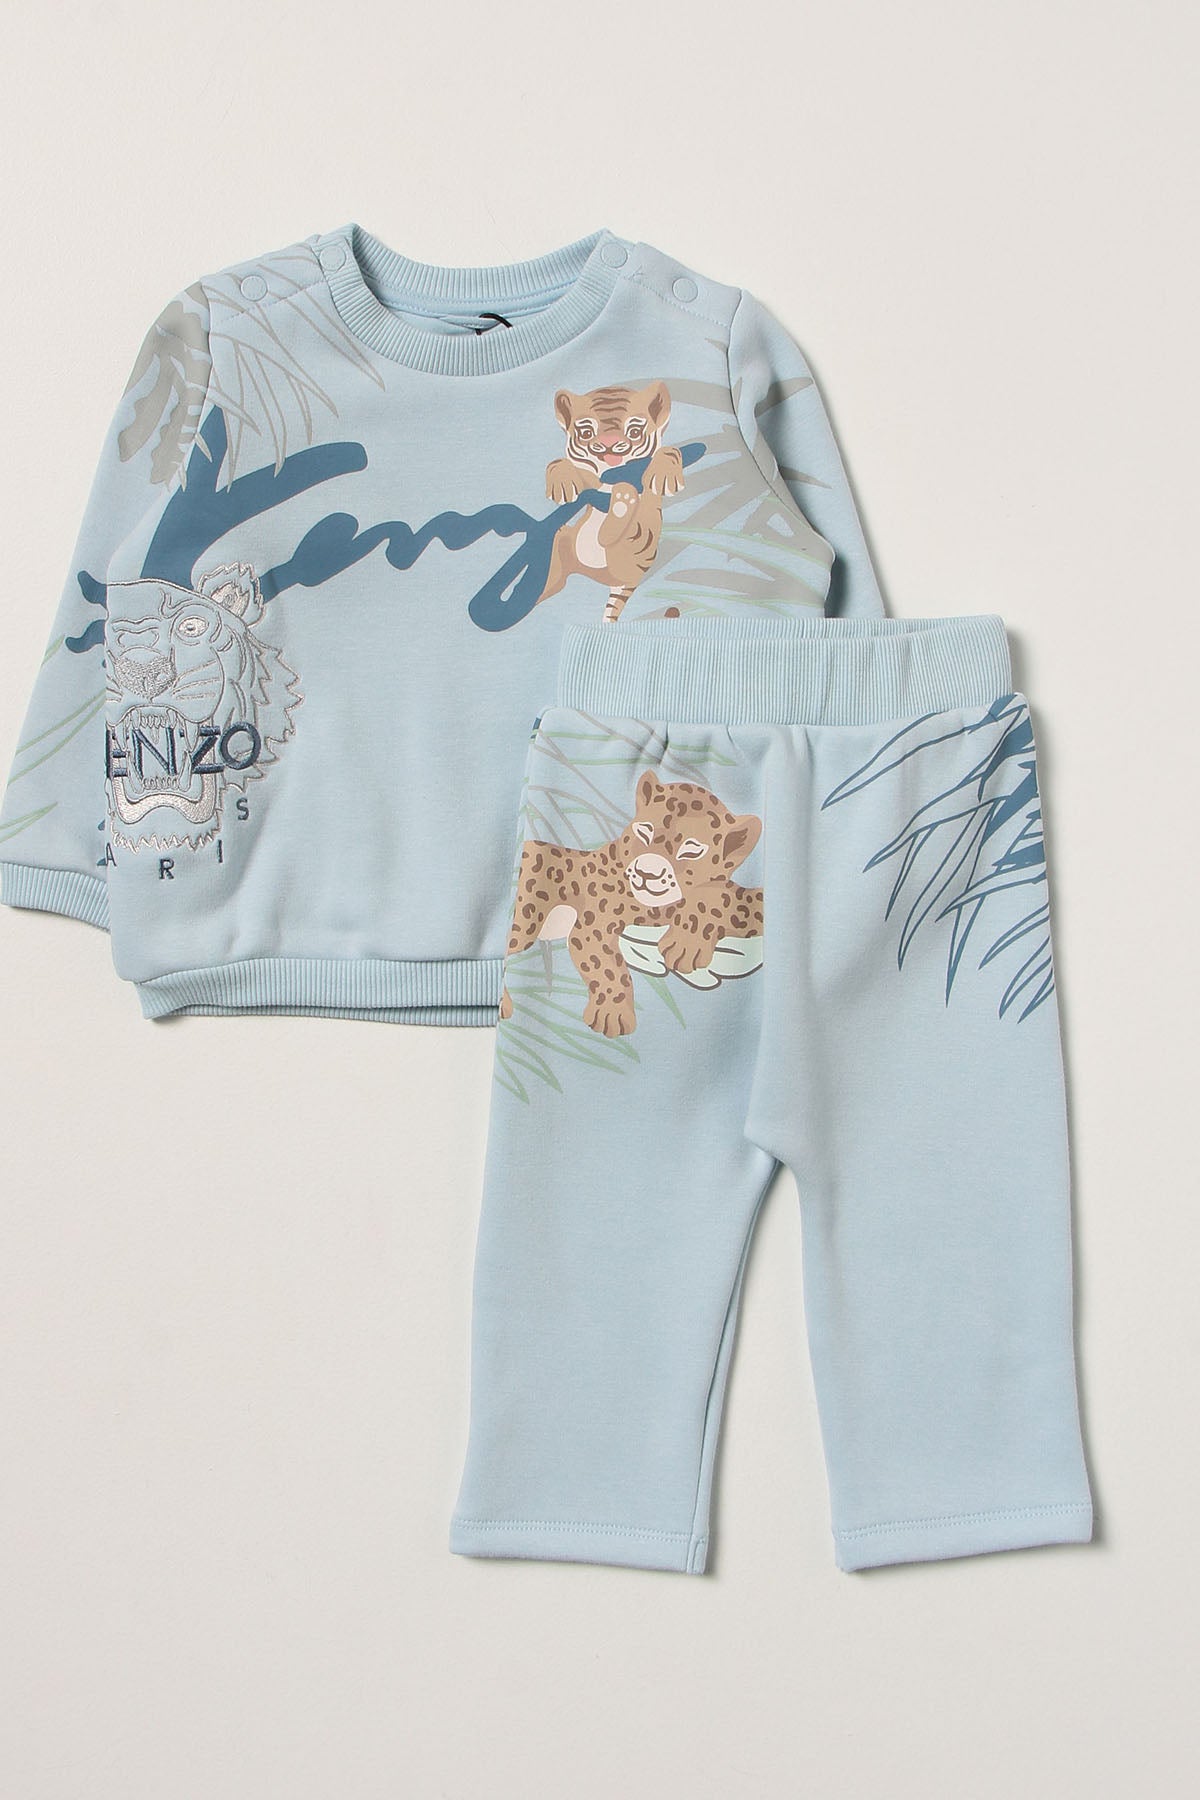 Kenzo Kids 6-12 Ay Erkek Bebek Logolu Eşofman Takımı-Libas Trendy Fashion Store